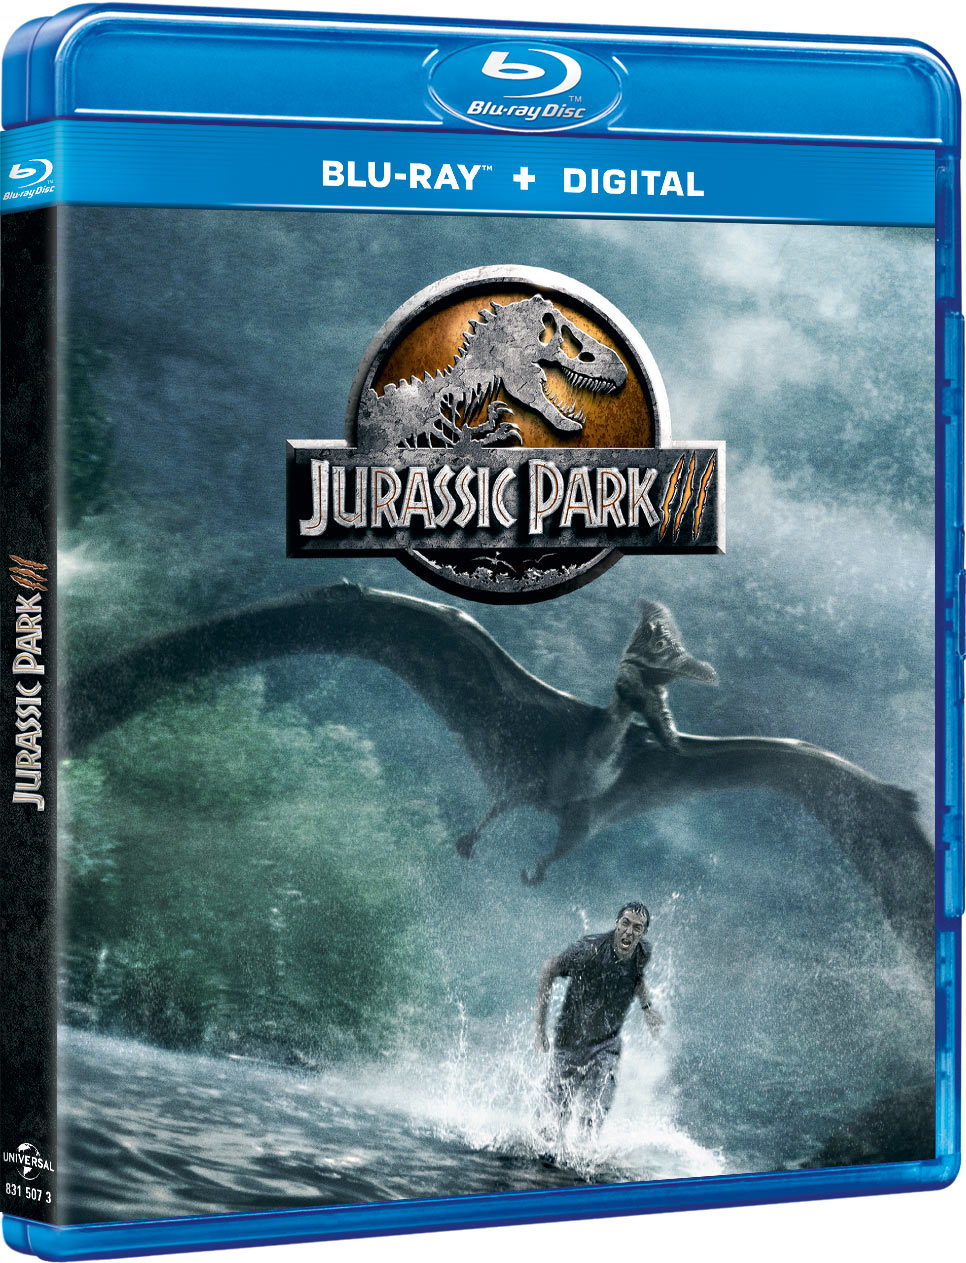 Jurassic Park 3 - Blu-ray + Digital